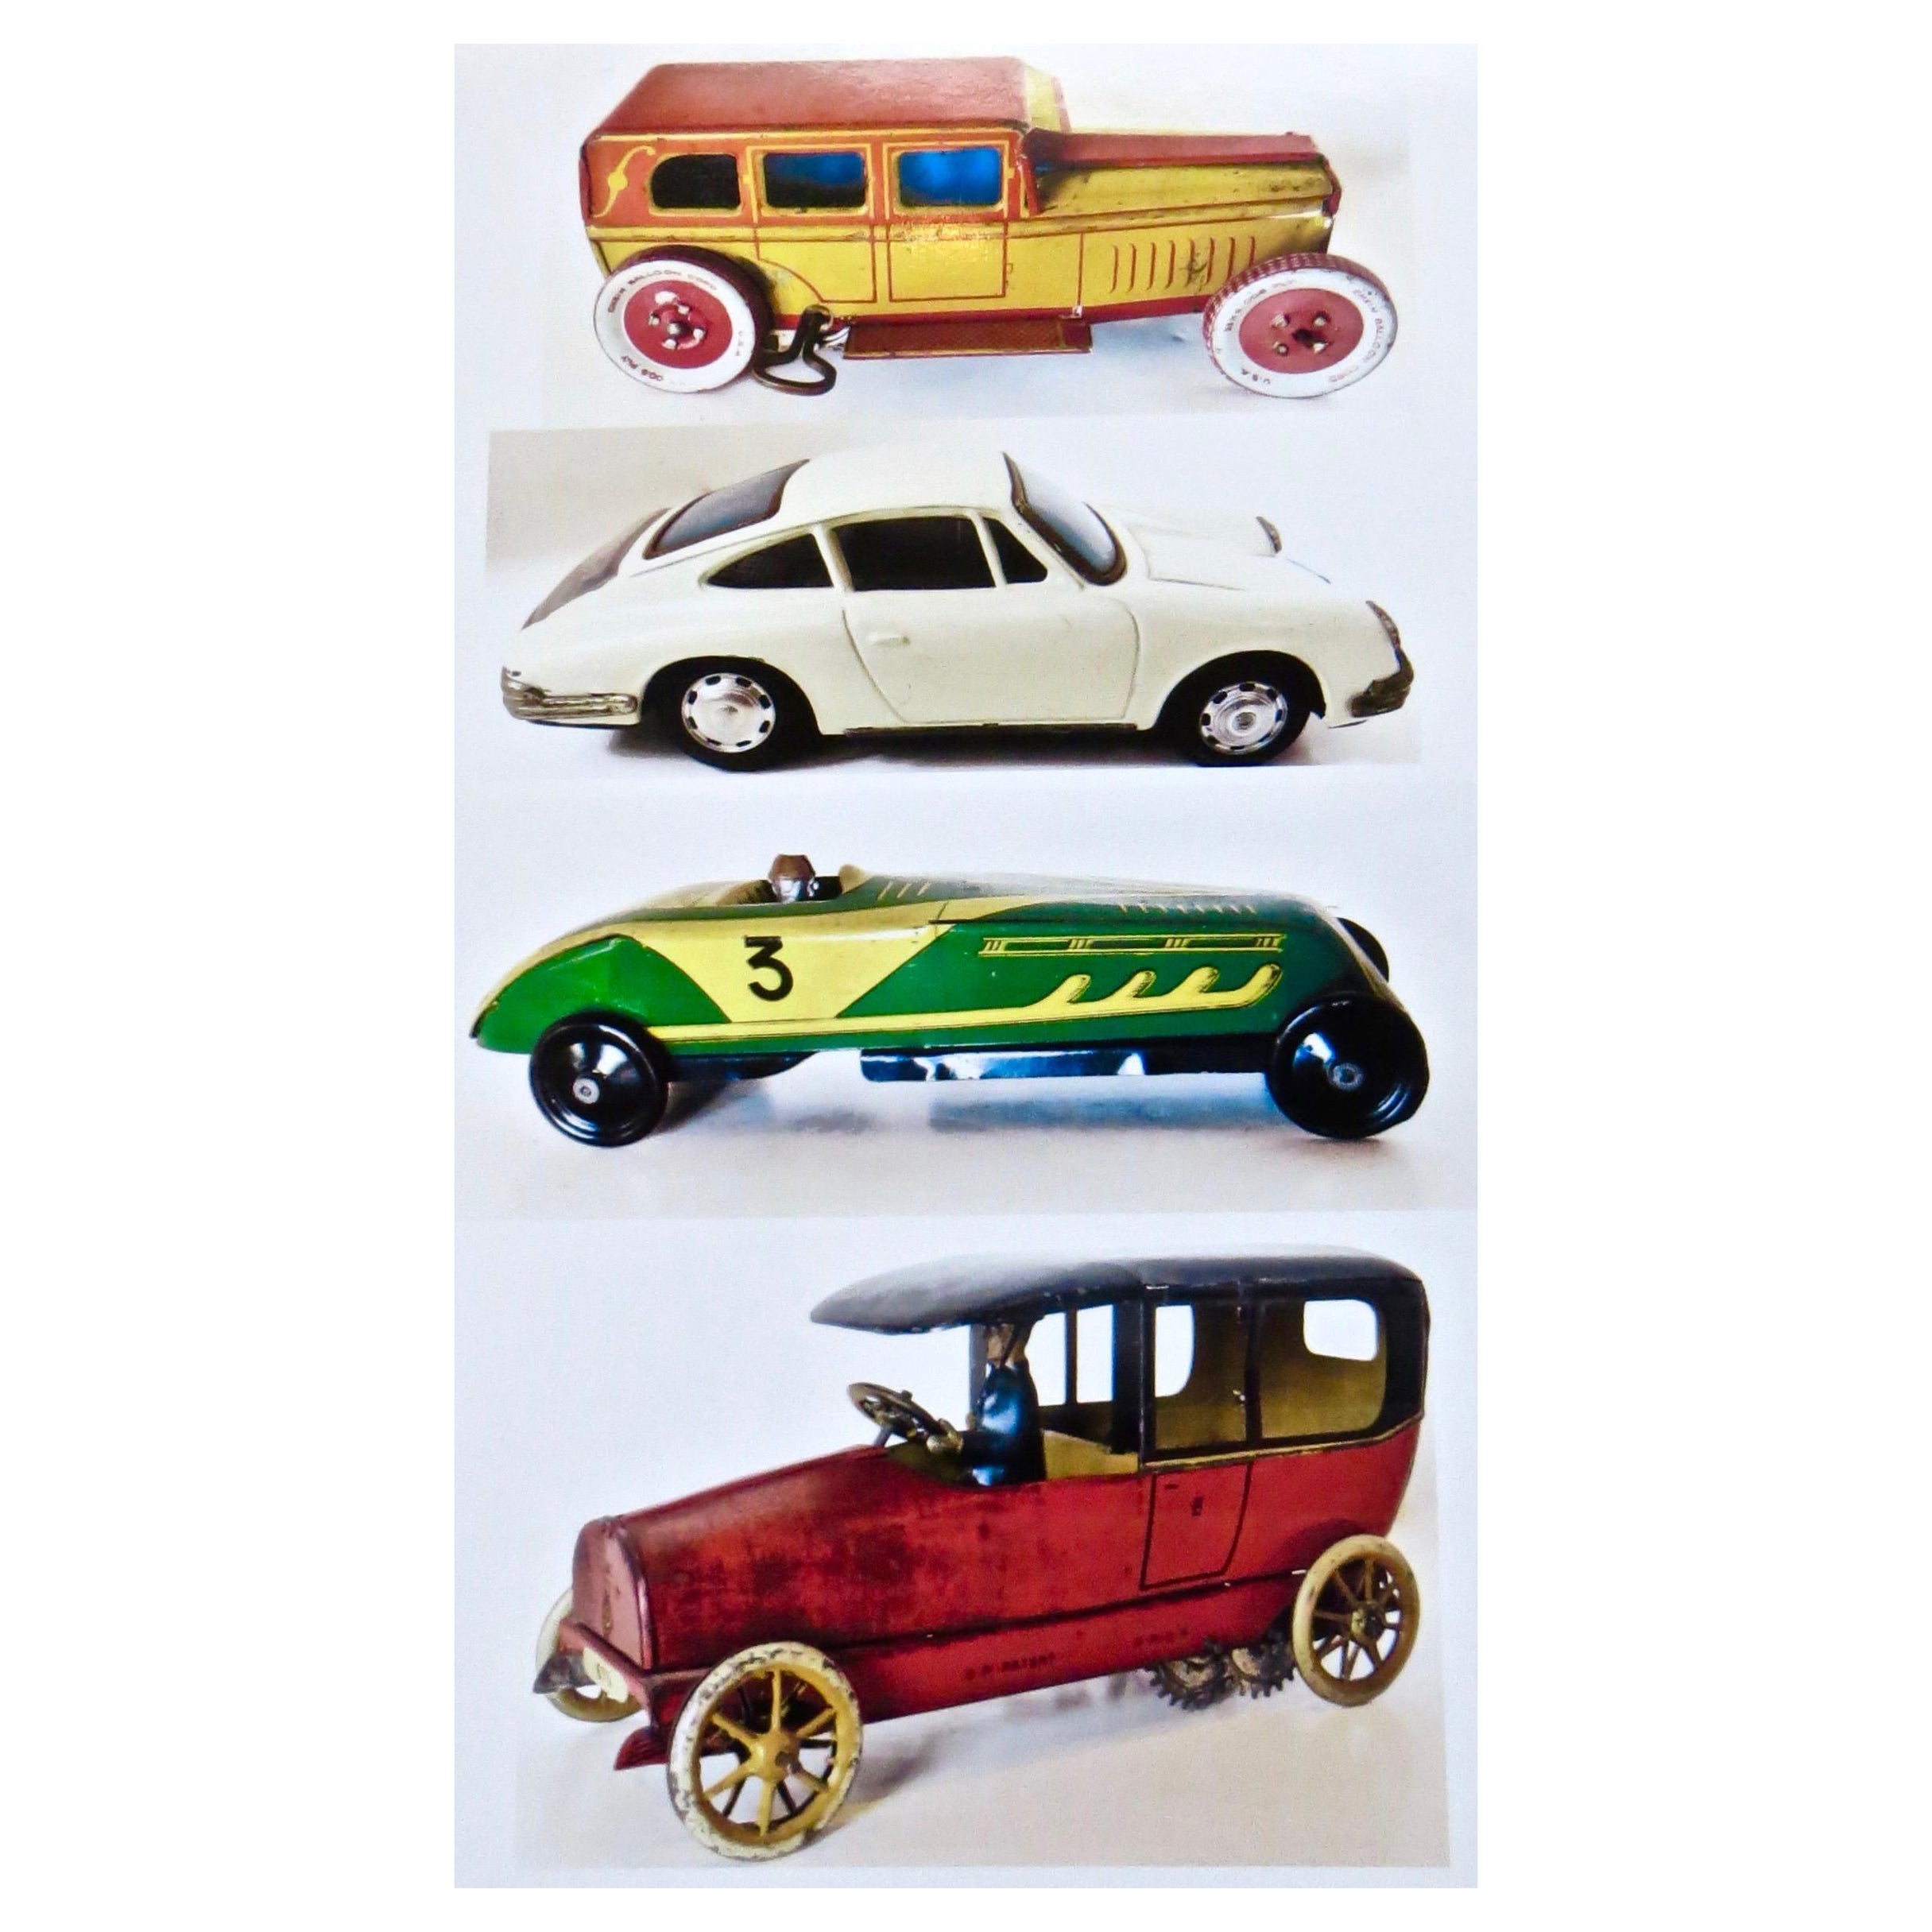 (4) Voitures jouets d'époque, toutes originales. Porsche, Limo, Lehman Sedan